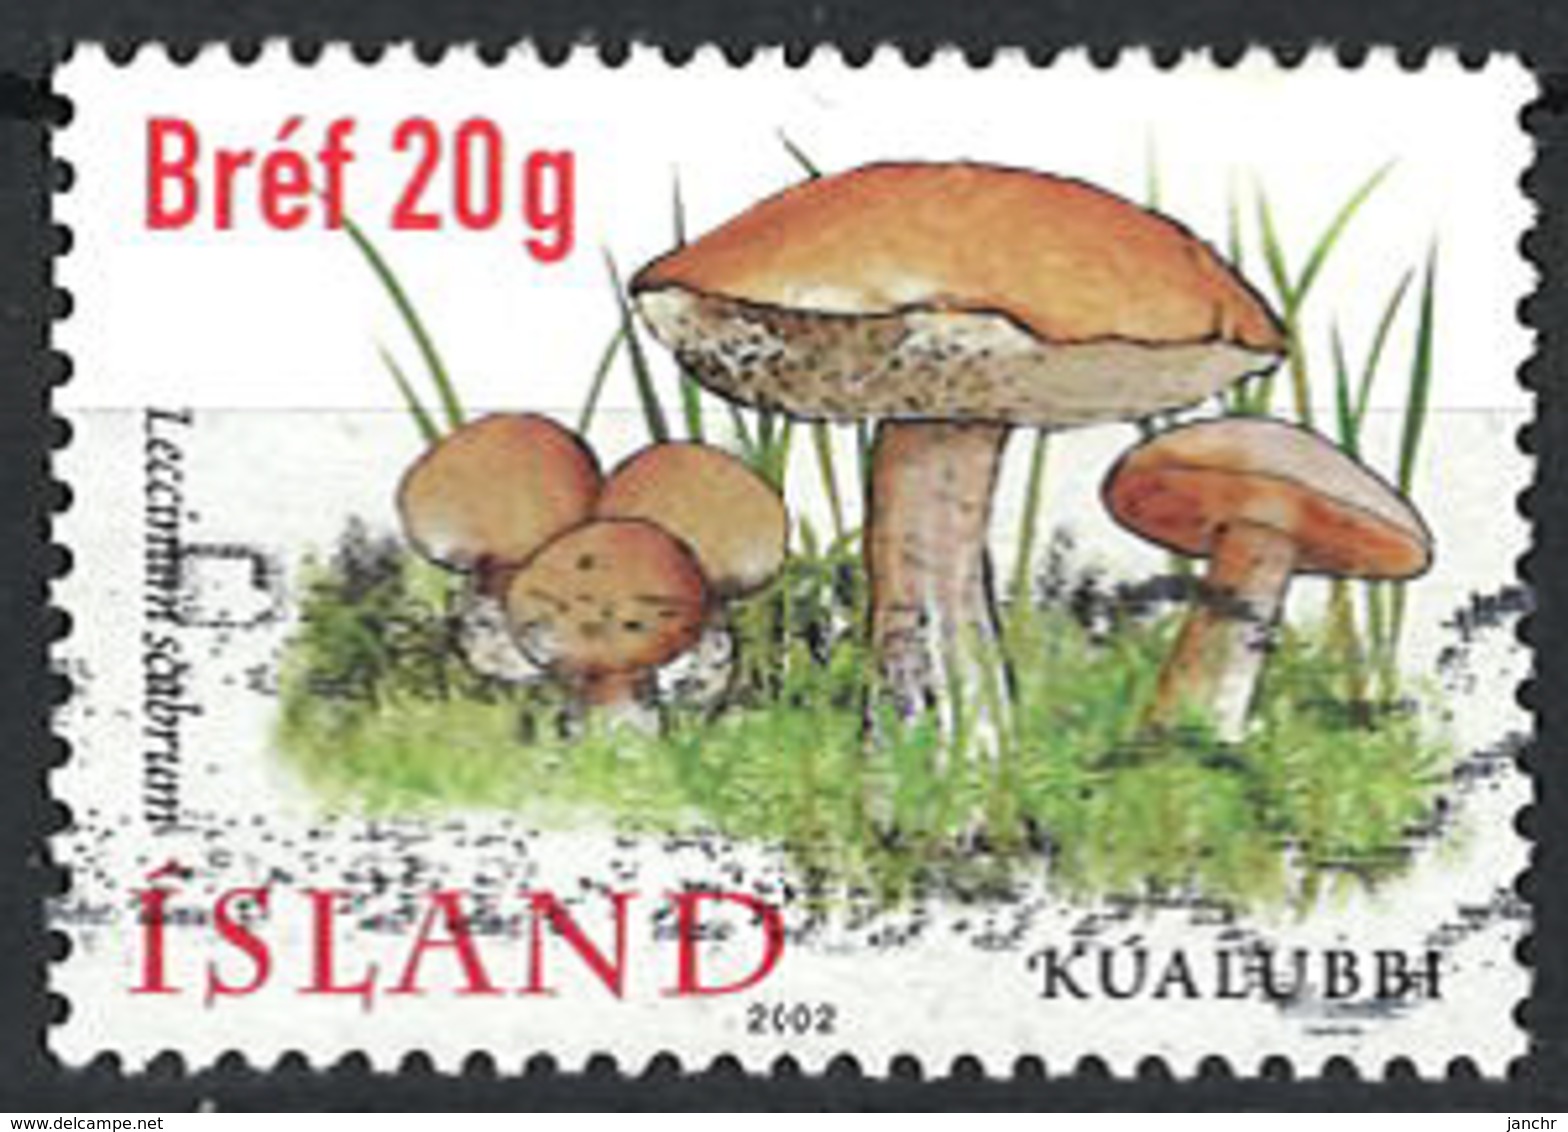 Iceland Island 2002. Mi 1000, Used O - Gebraucht